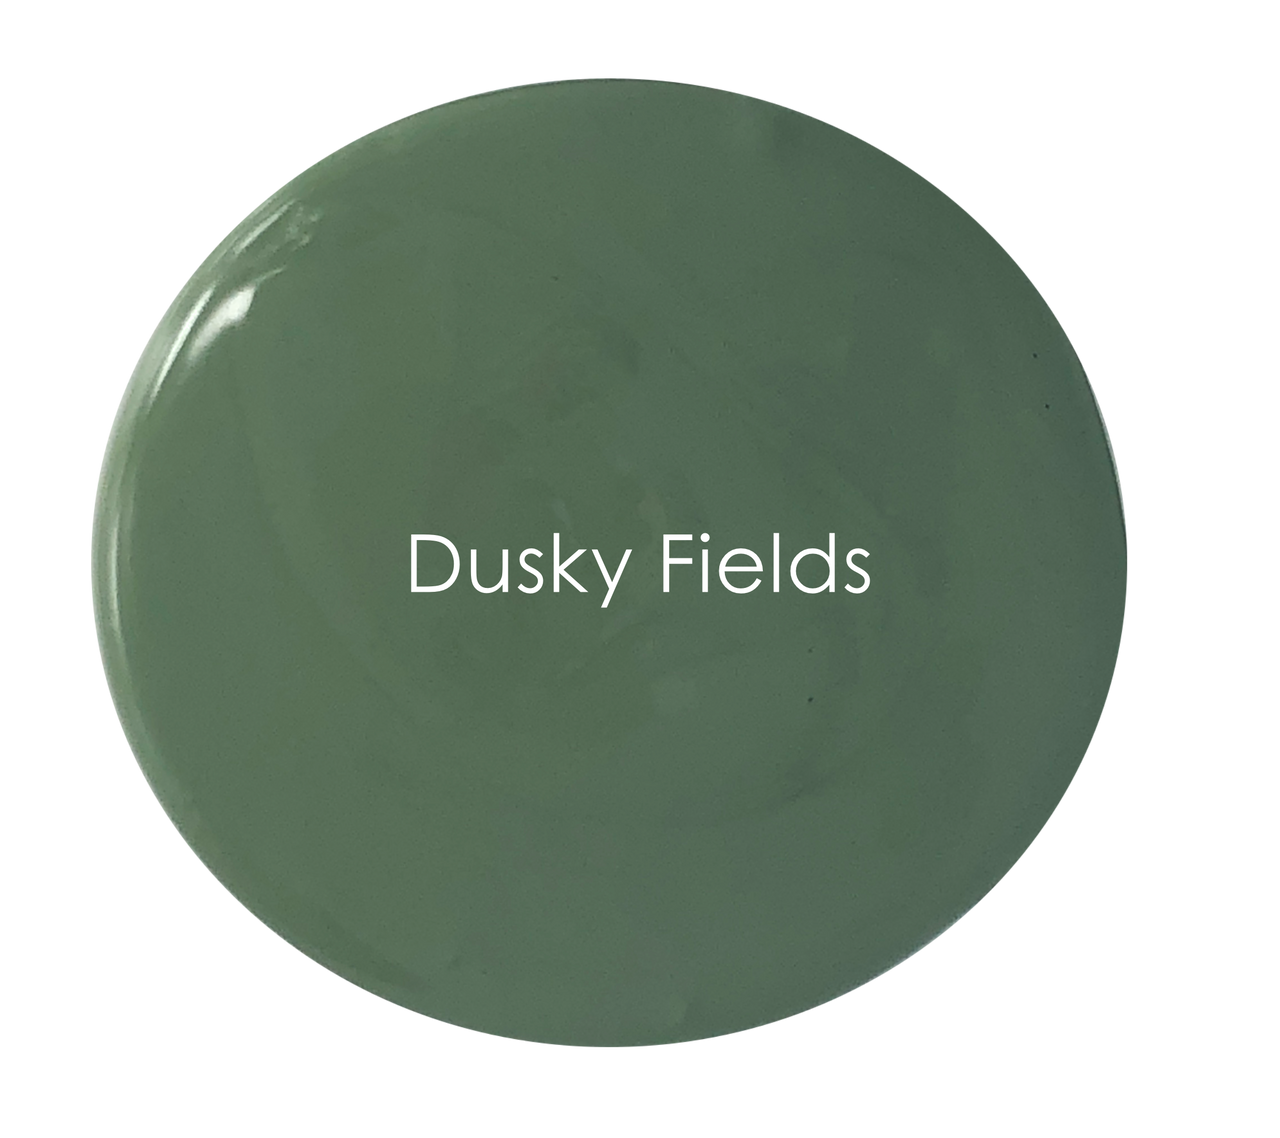 Dusky Fields - Premium Chalk Paint